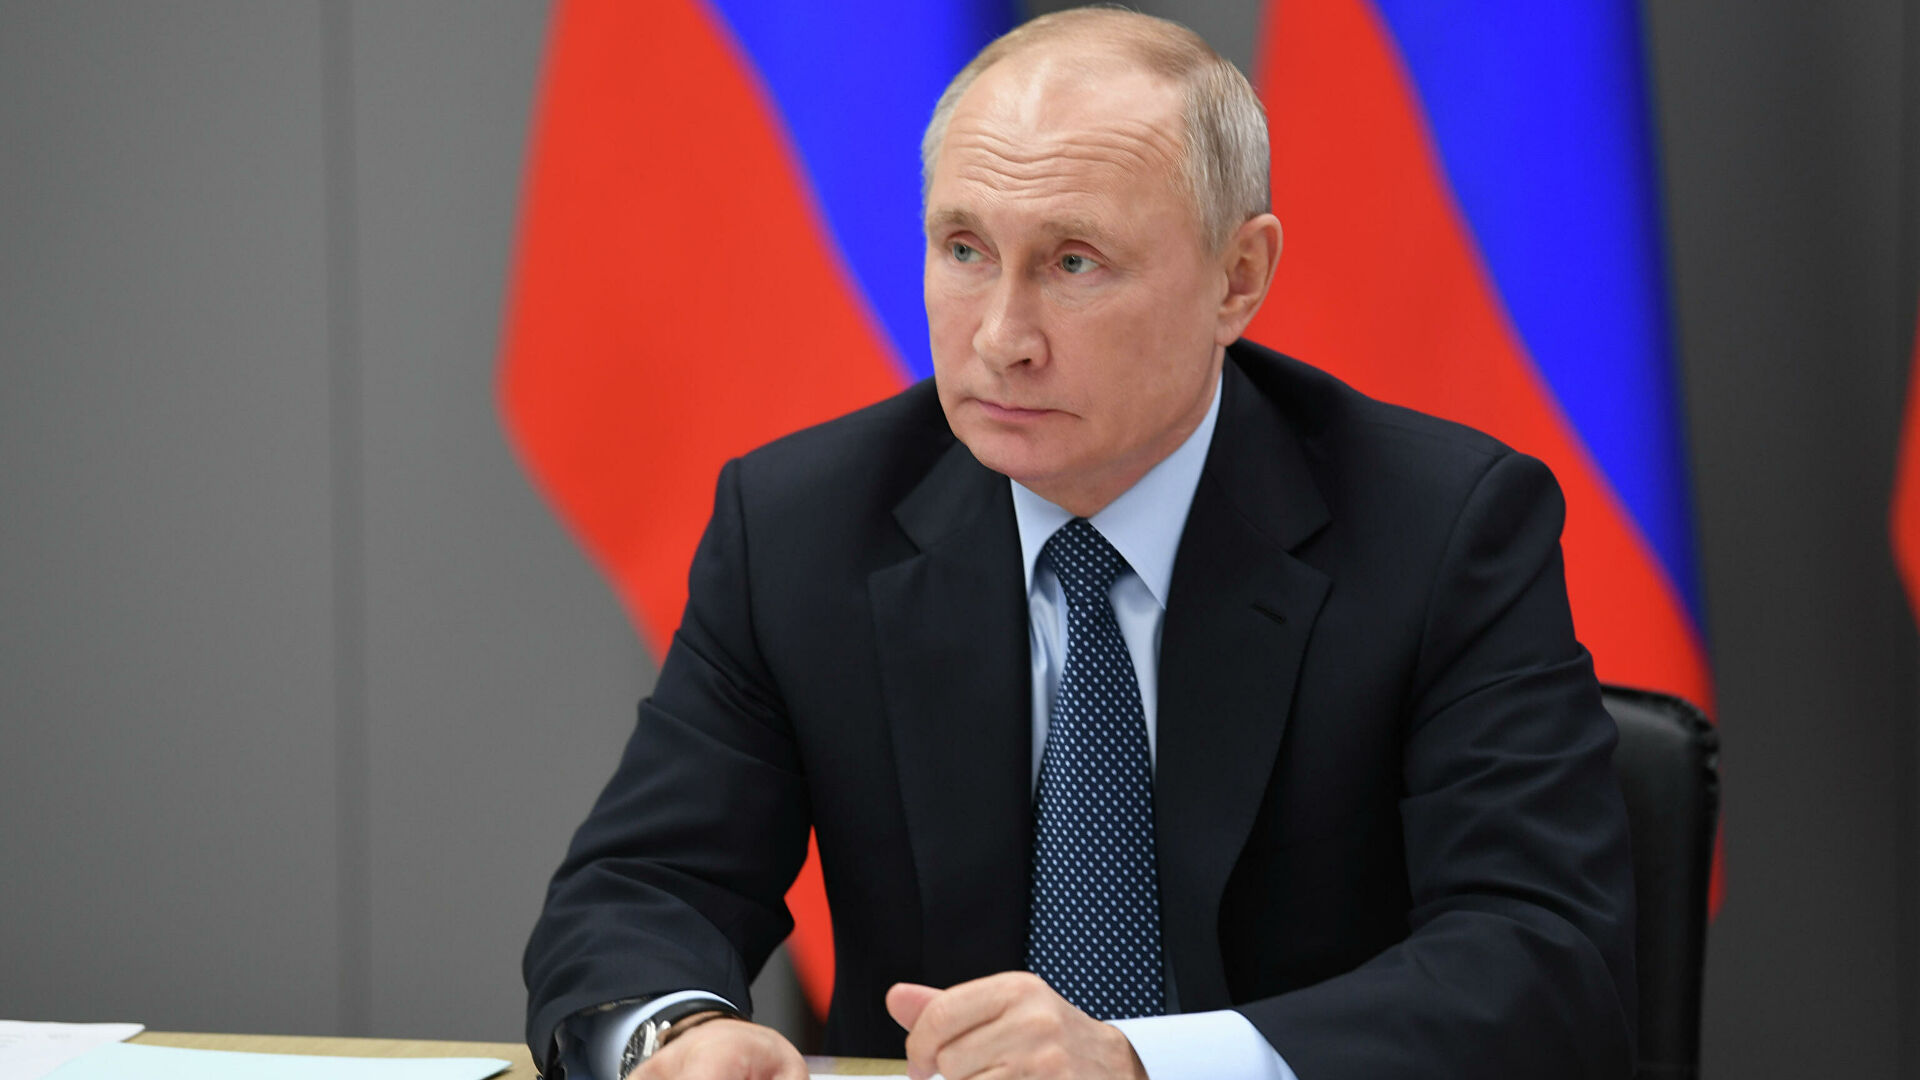 Российские миротворцы делают все возможное для стабилизации обстановки в Карабахе - Путин